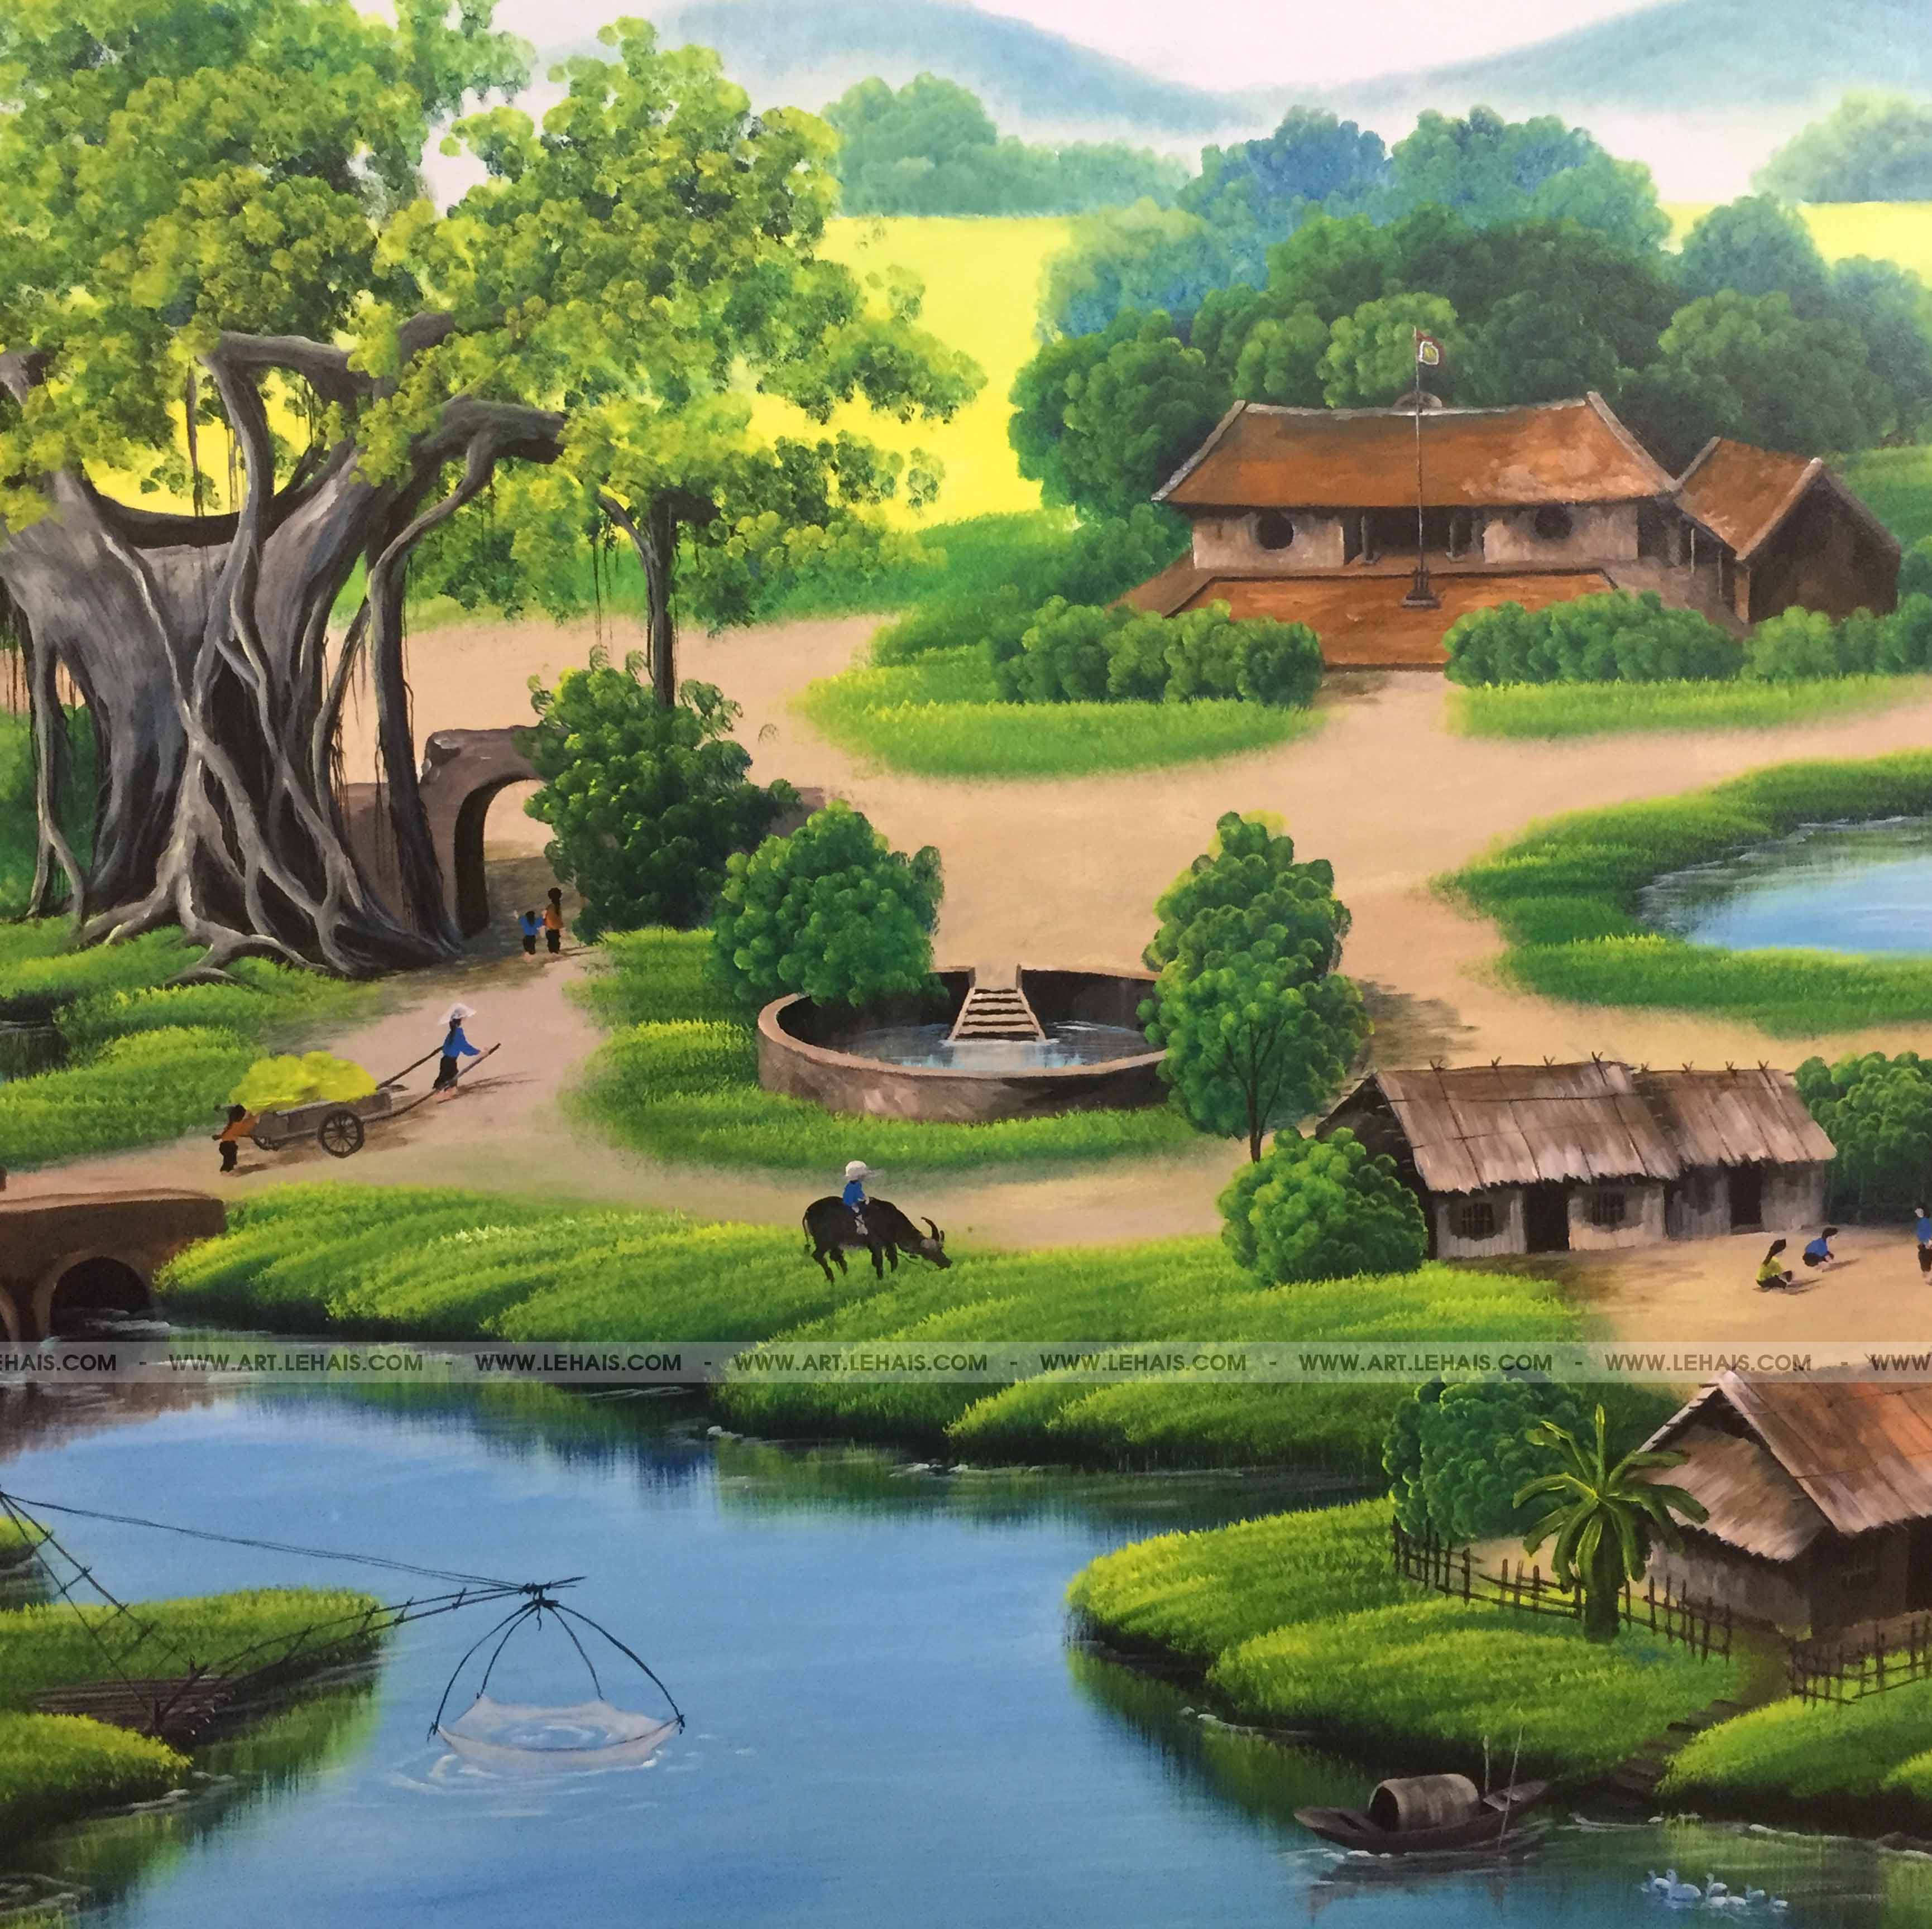 Vẽ tranh tường 3D cảnh đồng quê tại gia đình ở Sơn Tây, Hà Nội - TT173LHAR  - LEHAIS ART